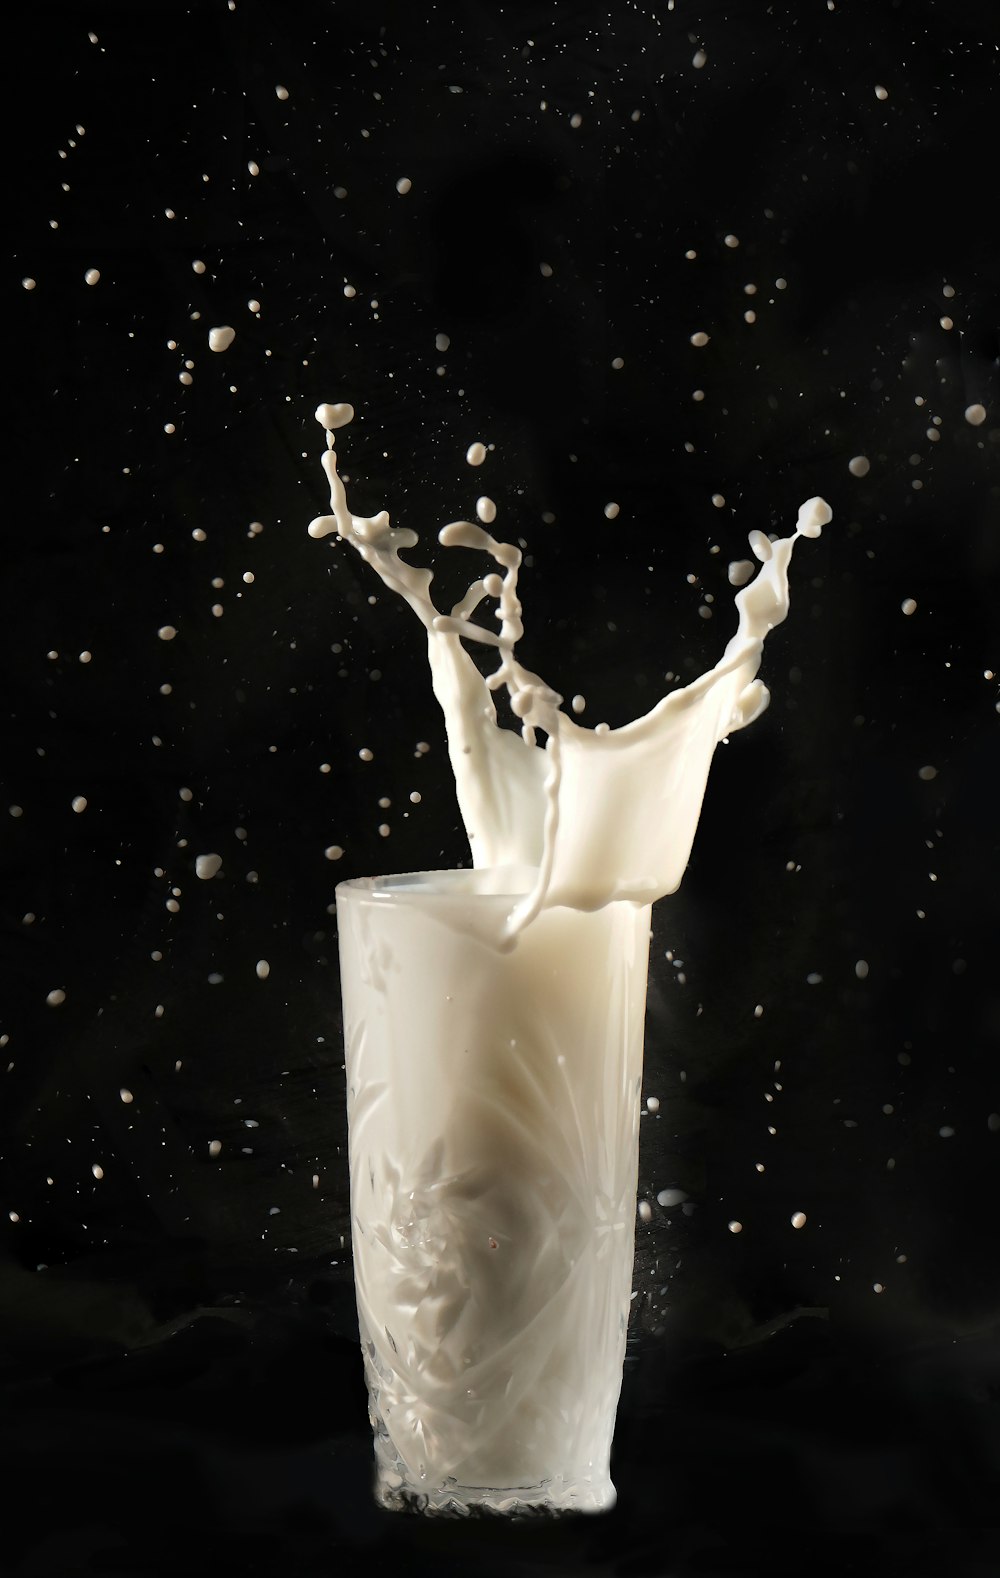 a milk splashing into a glass of milk